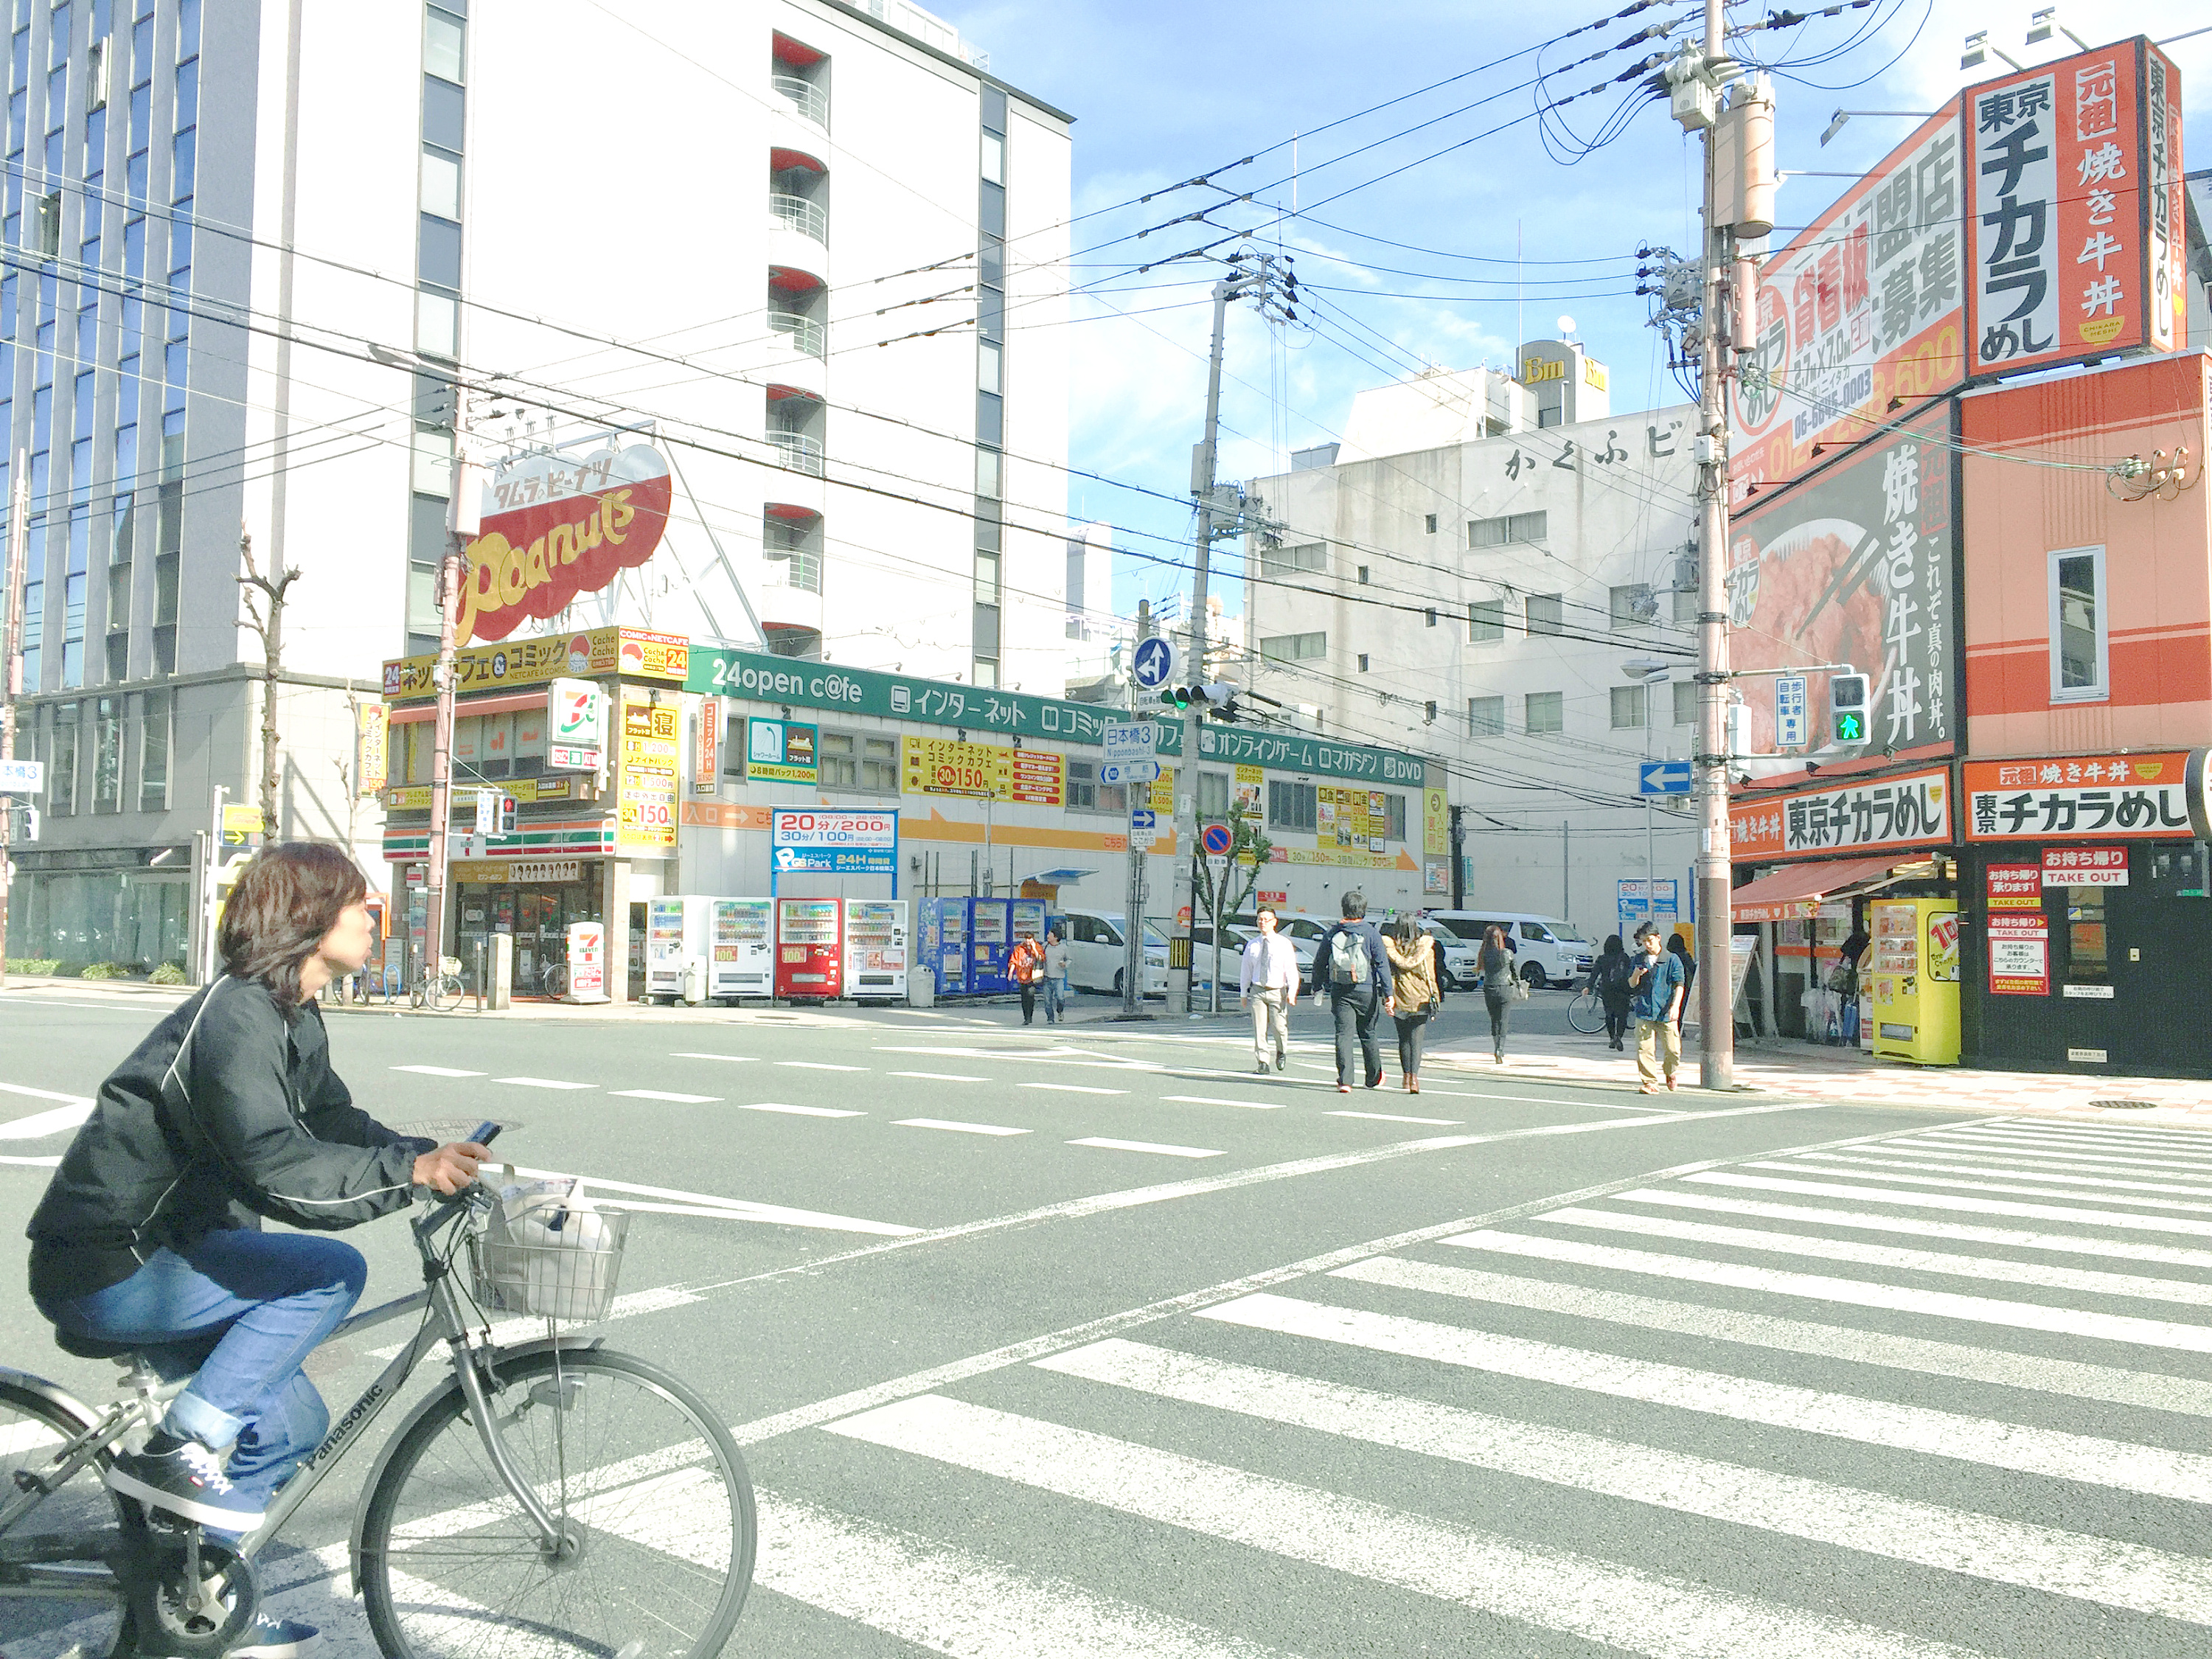 日本街头电脑壁纸有嘛? - 知乎